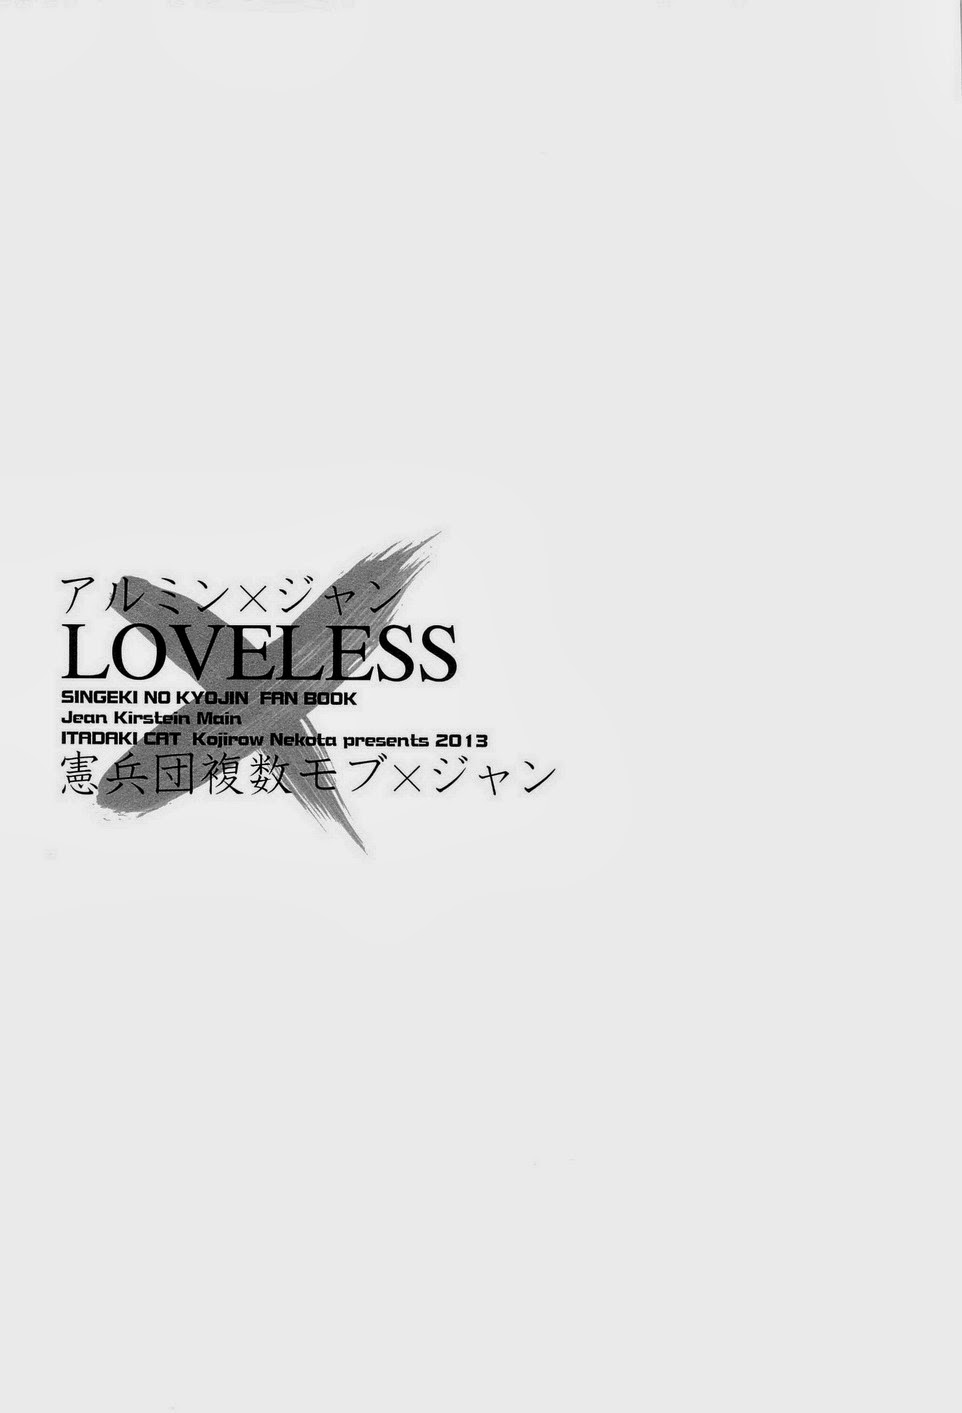 (壁外調査博) [イタダキキャット (猫田小次郎)] LOVELESS (進撃の巨人)